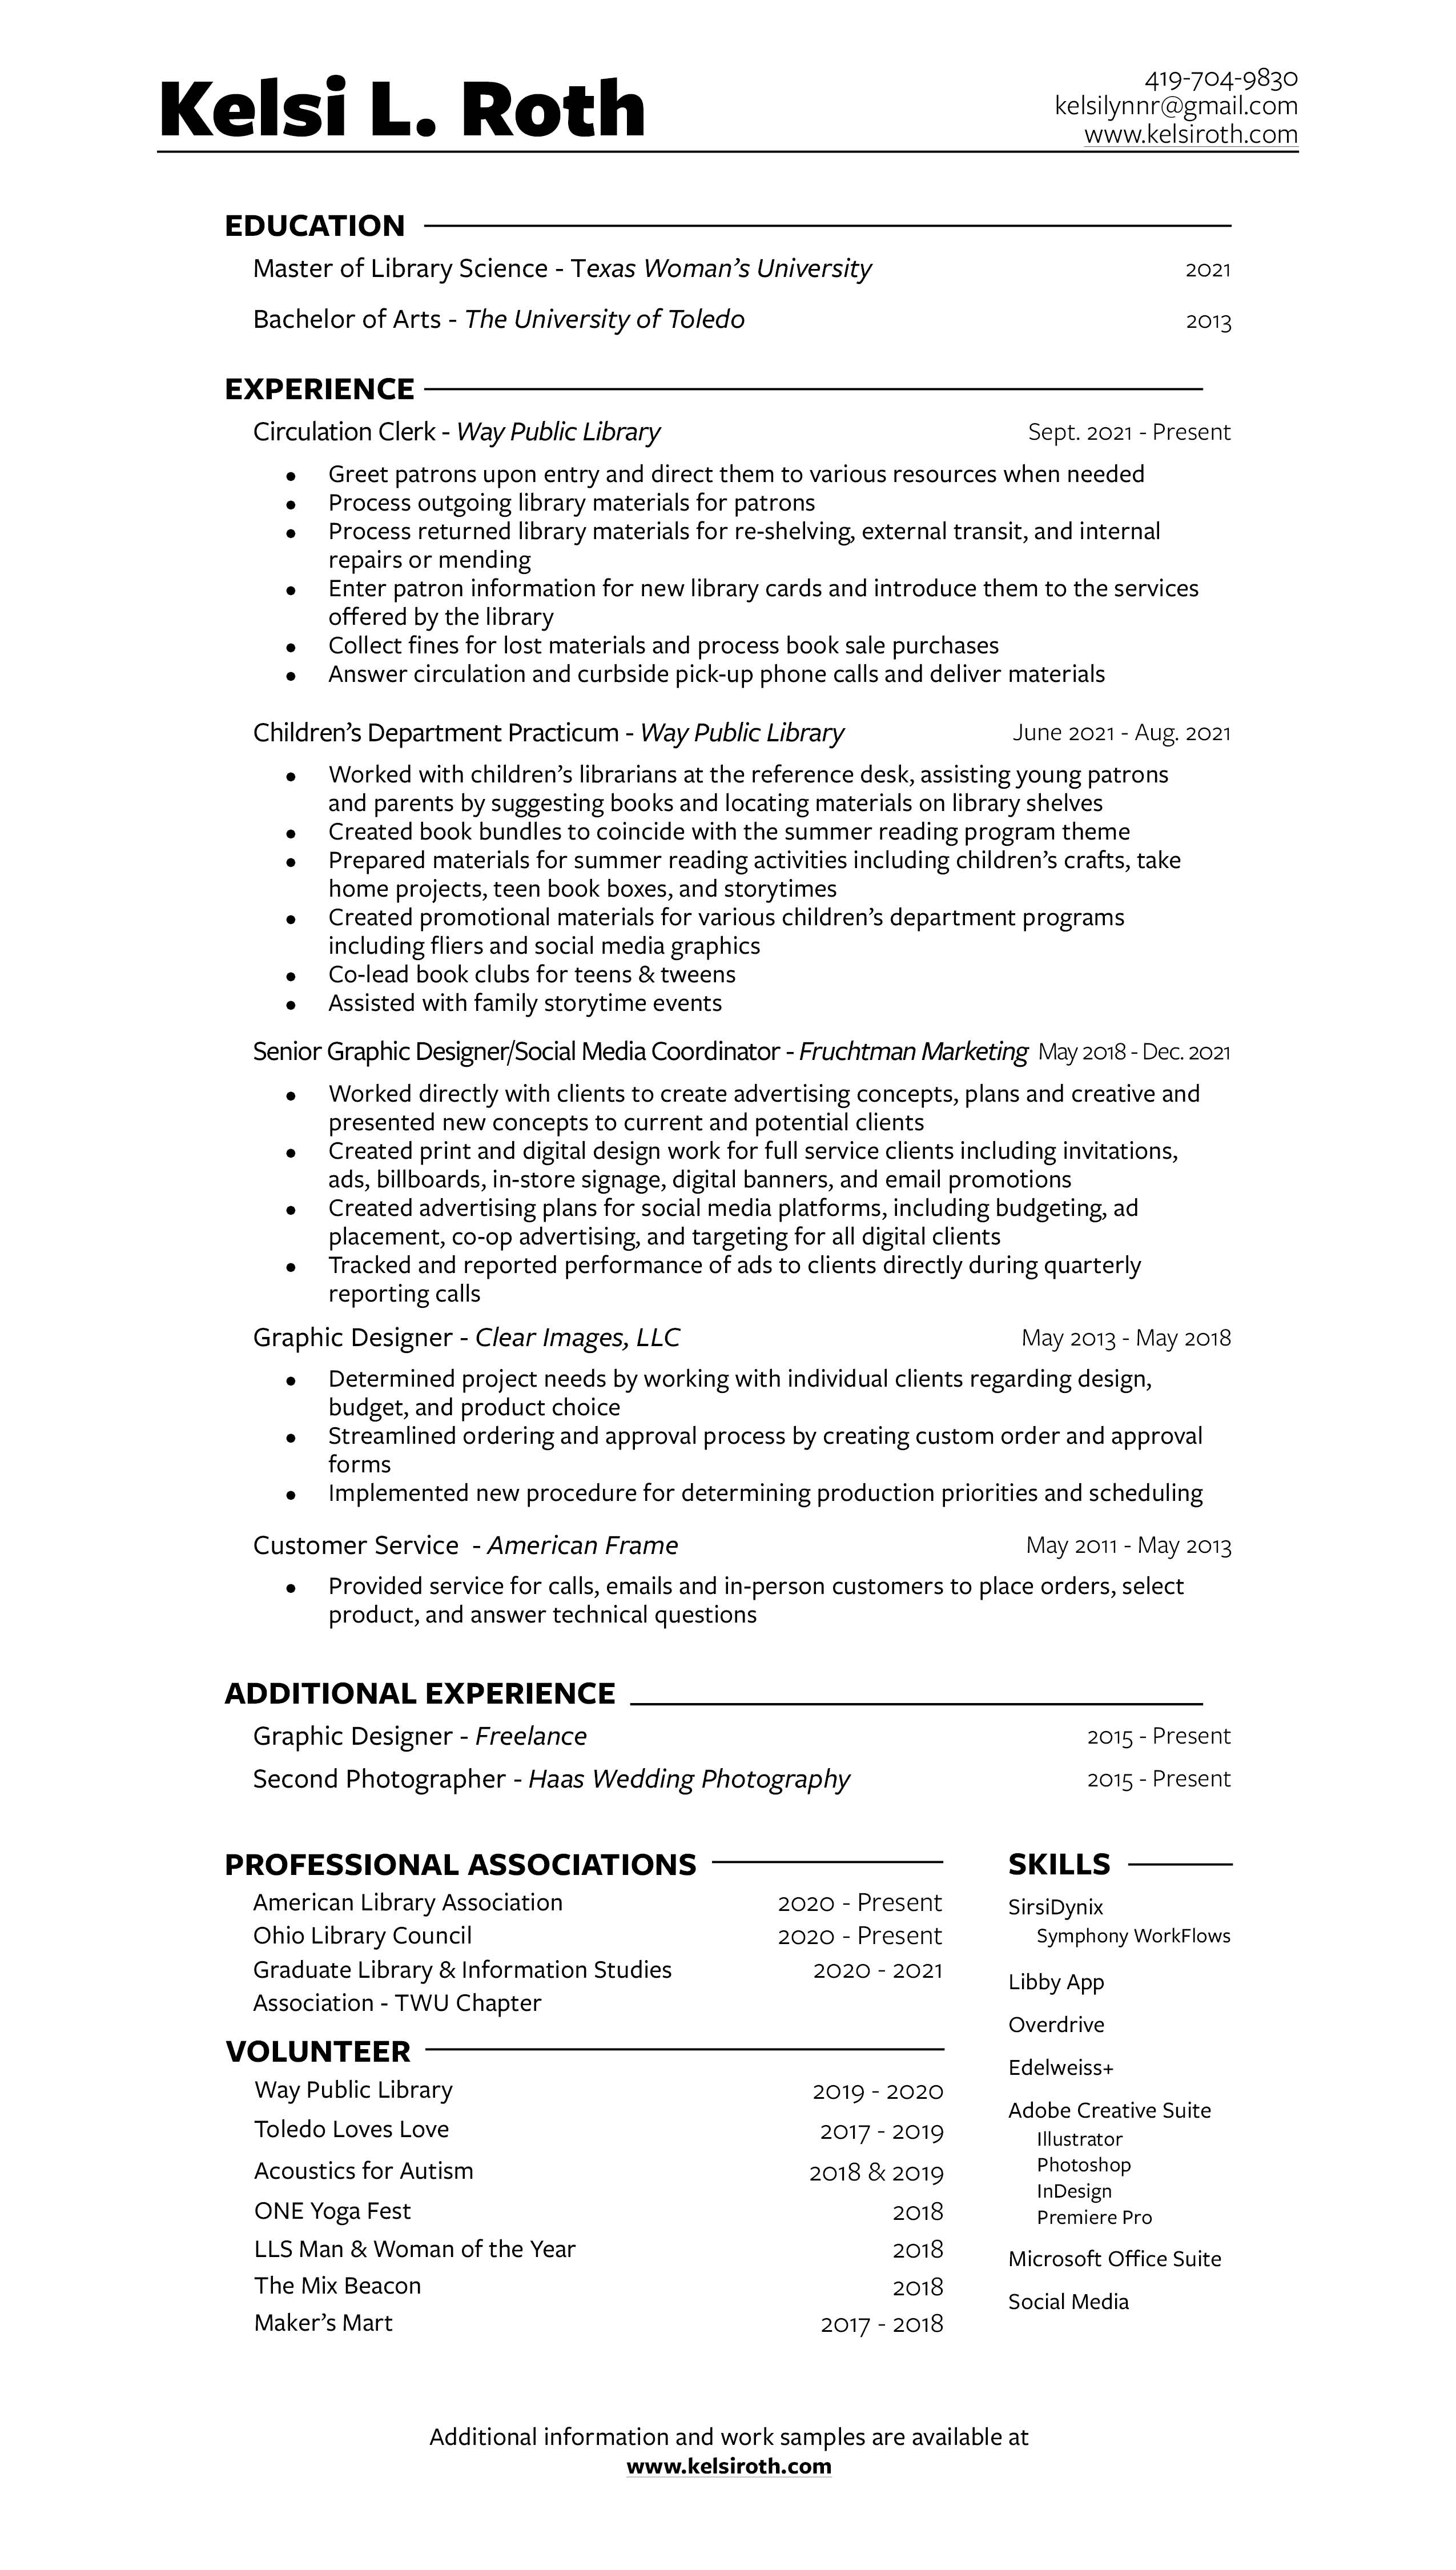 124-kelsi-roth-resume-2021---website.jpg